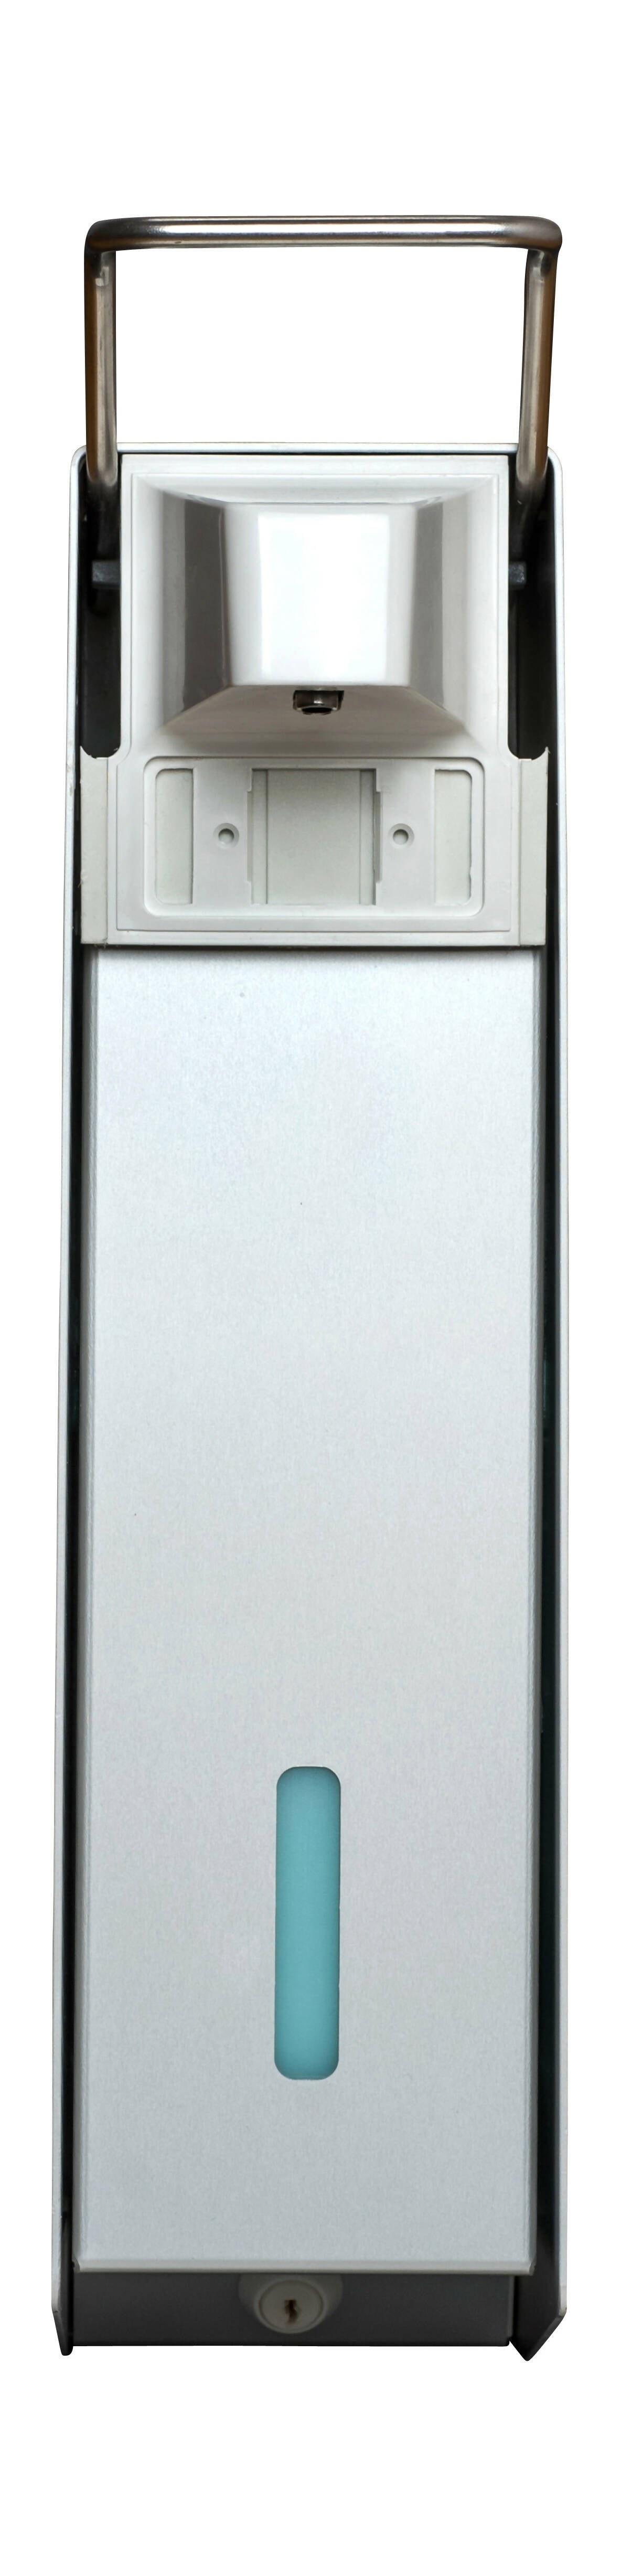 SORIFA - 5er-Set - Robuster, ergonomischer, abschließbarer Wandspender aus Metall für 2,5L-Flasche der Marke SORIFA - Für Gele und Flüssigseifen. - 0